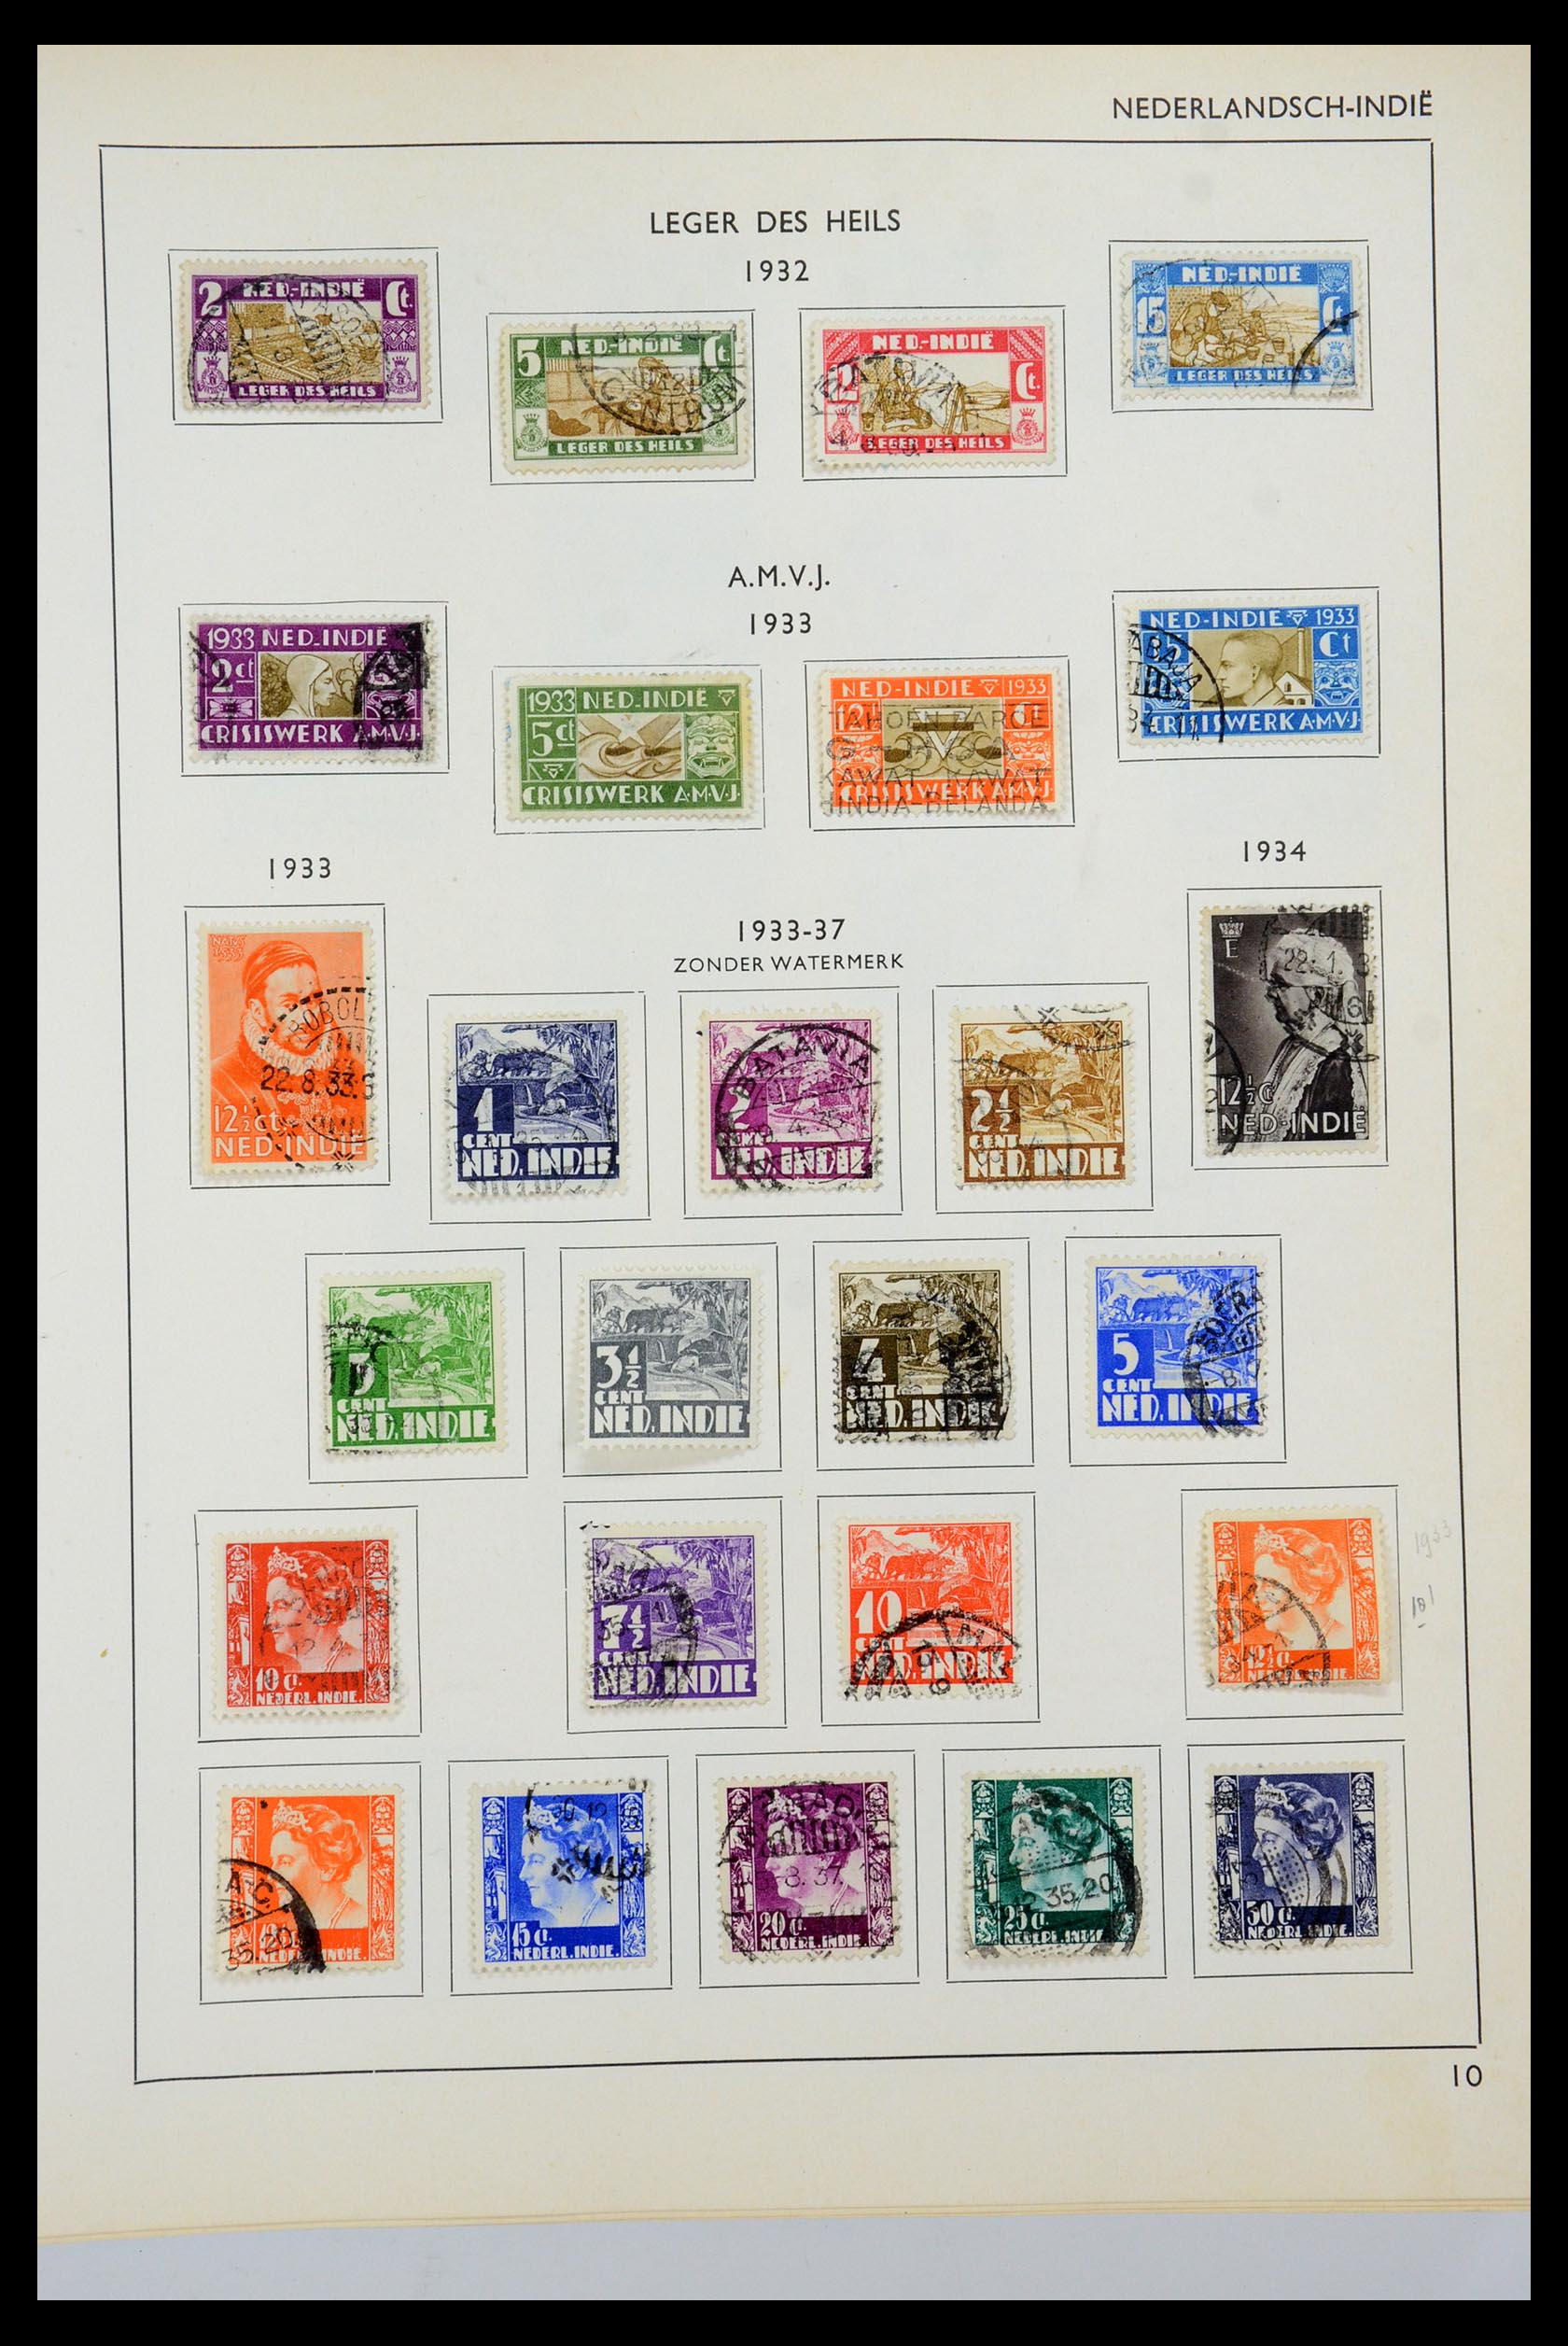 35535 048 - Postzegelverzameling 35535 Nederland en overzeese gebiedsdelen 1852-1